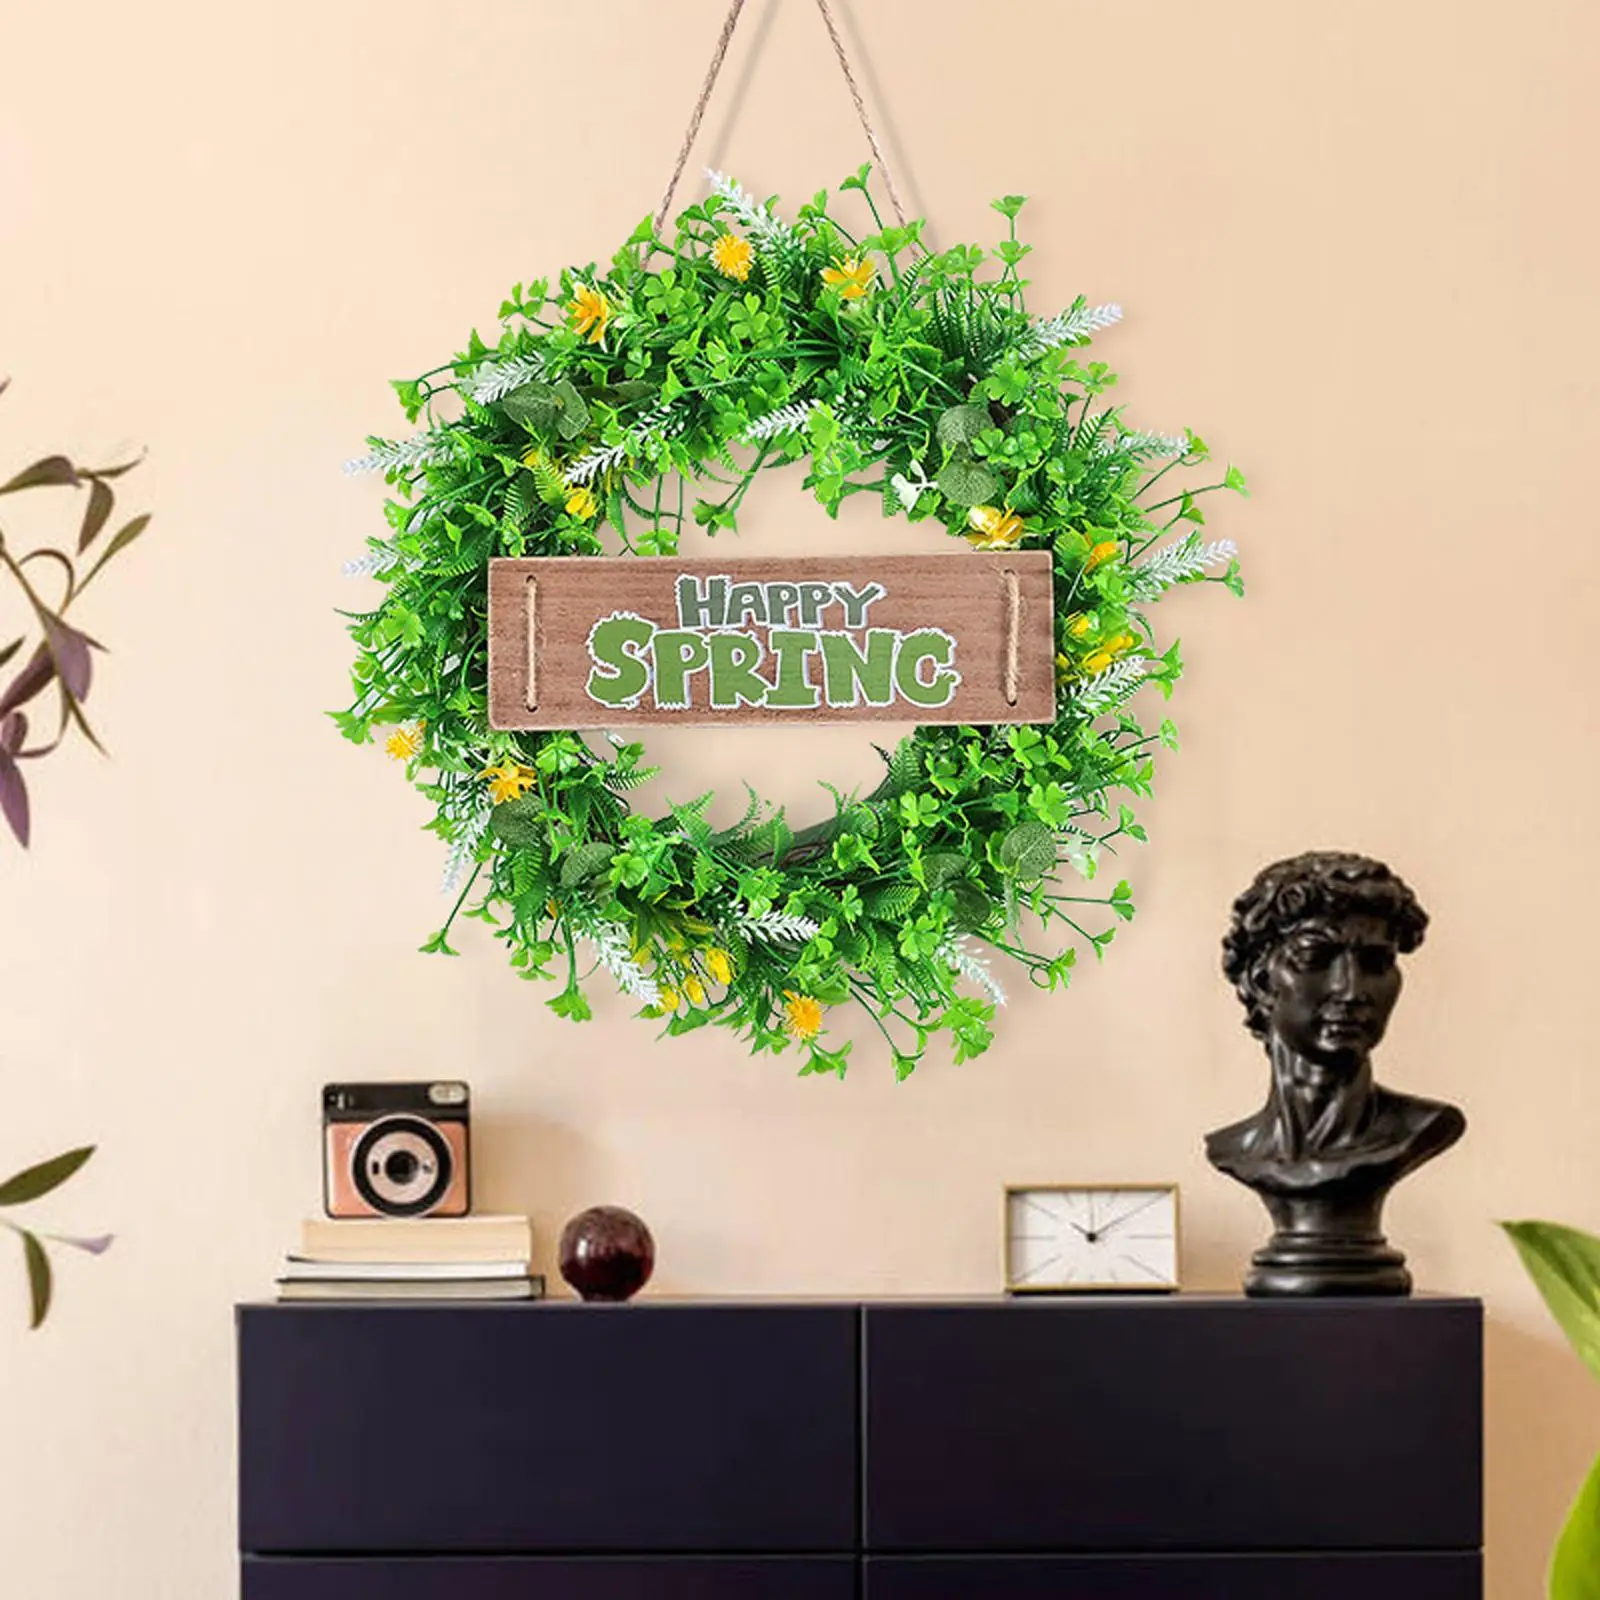 40cm Happy Spring Sign Greenery Wreath Summer Front Door Hanger Rustic Garland